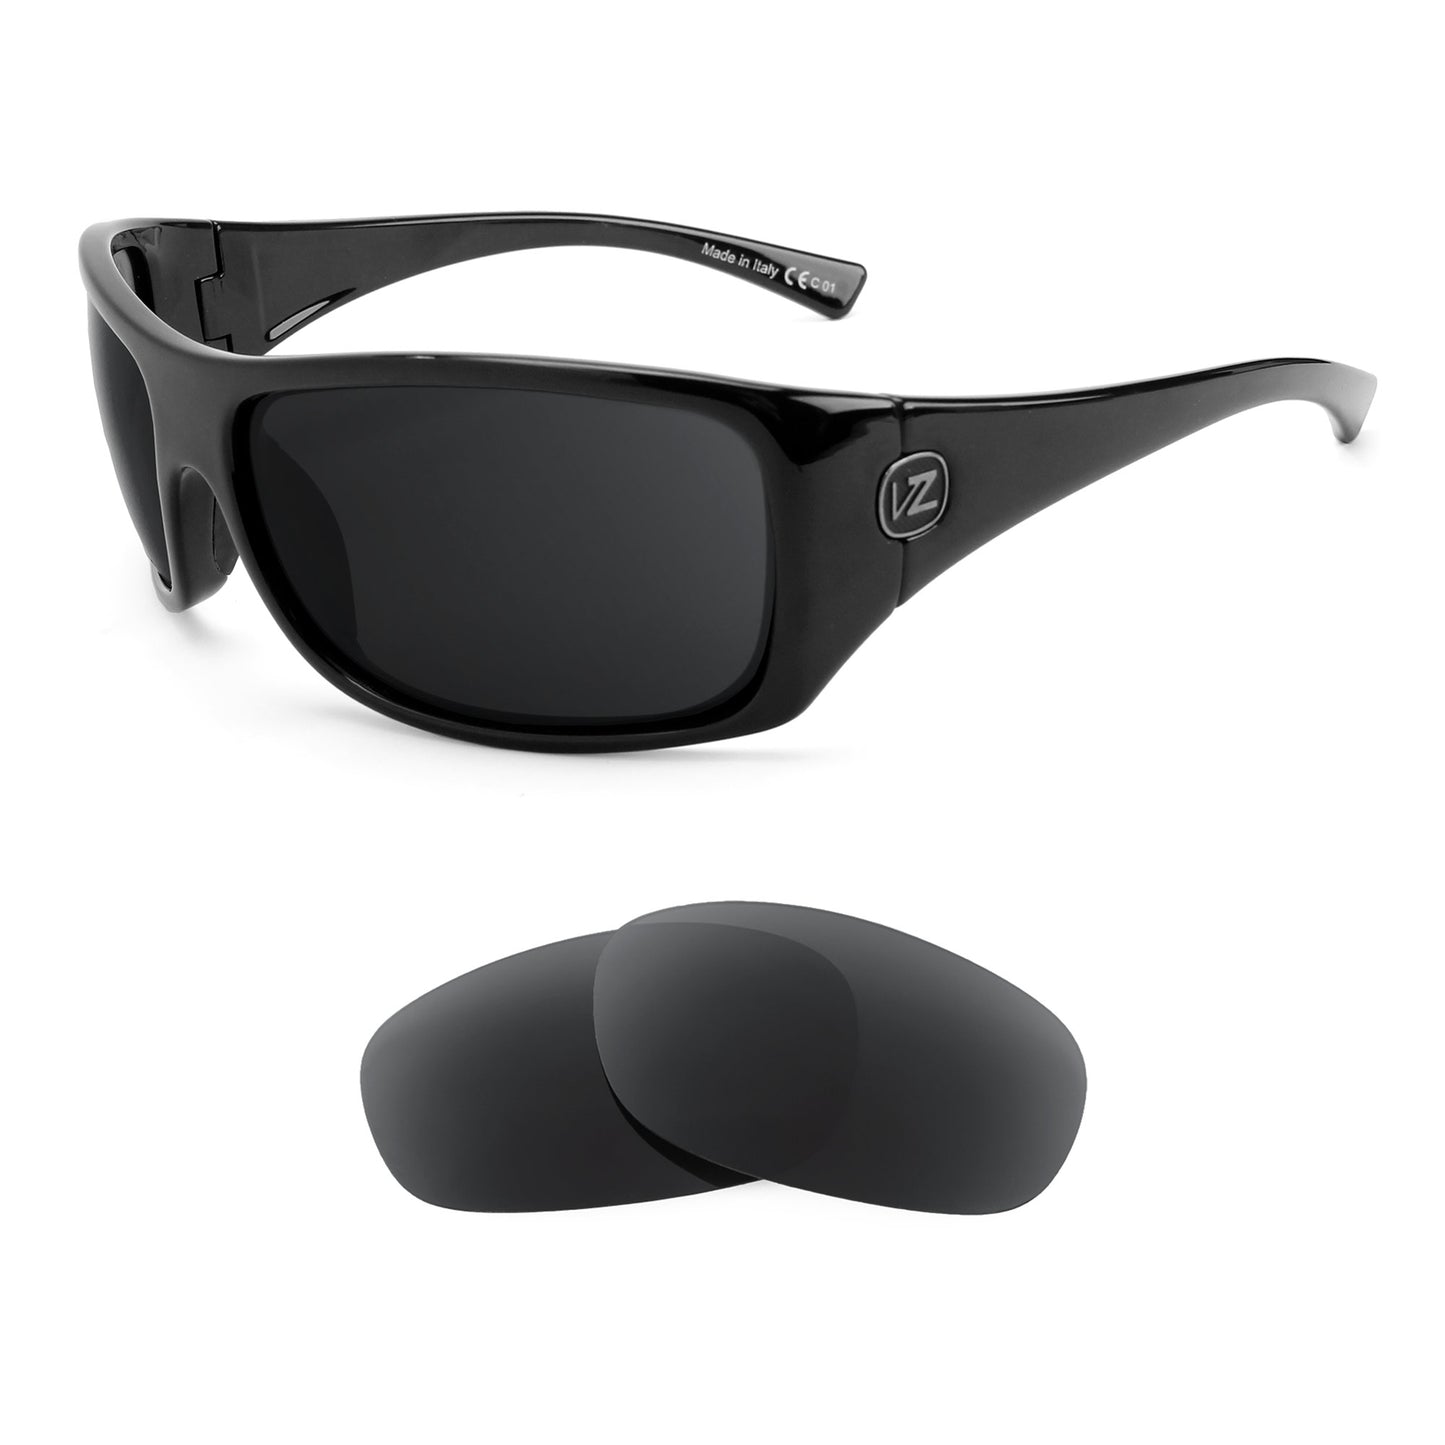 VonZipper Alysium sunglasses with replacement lenses